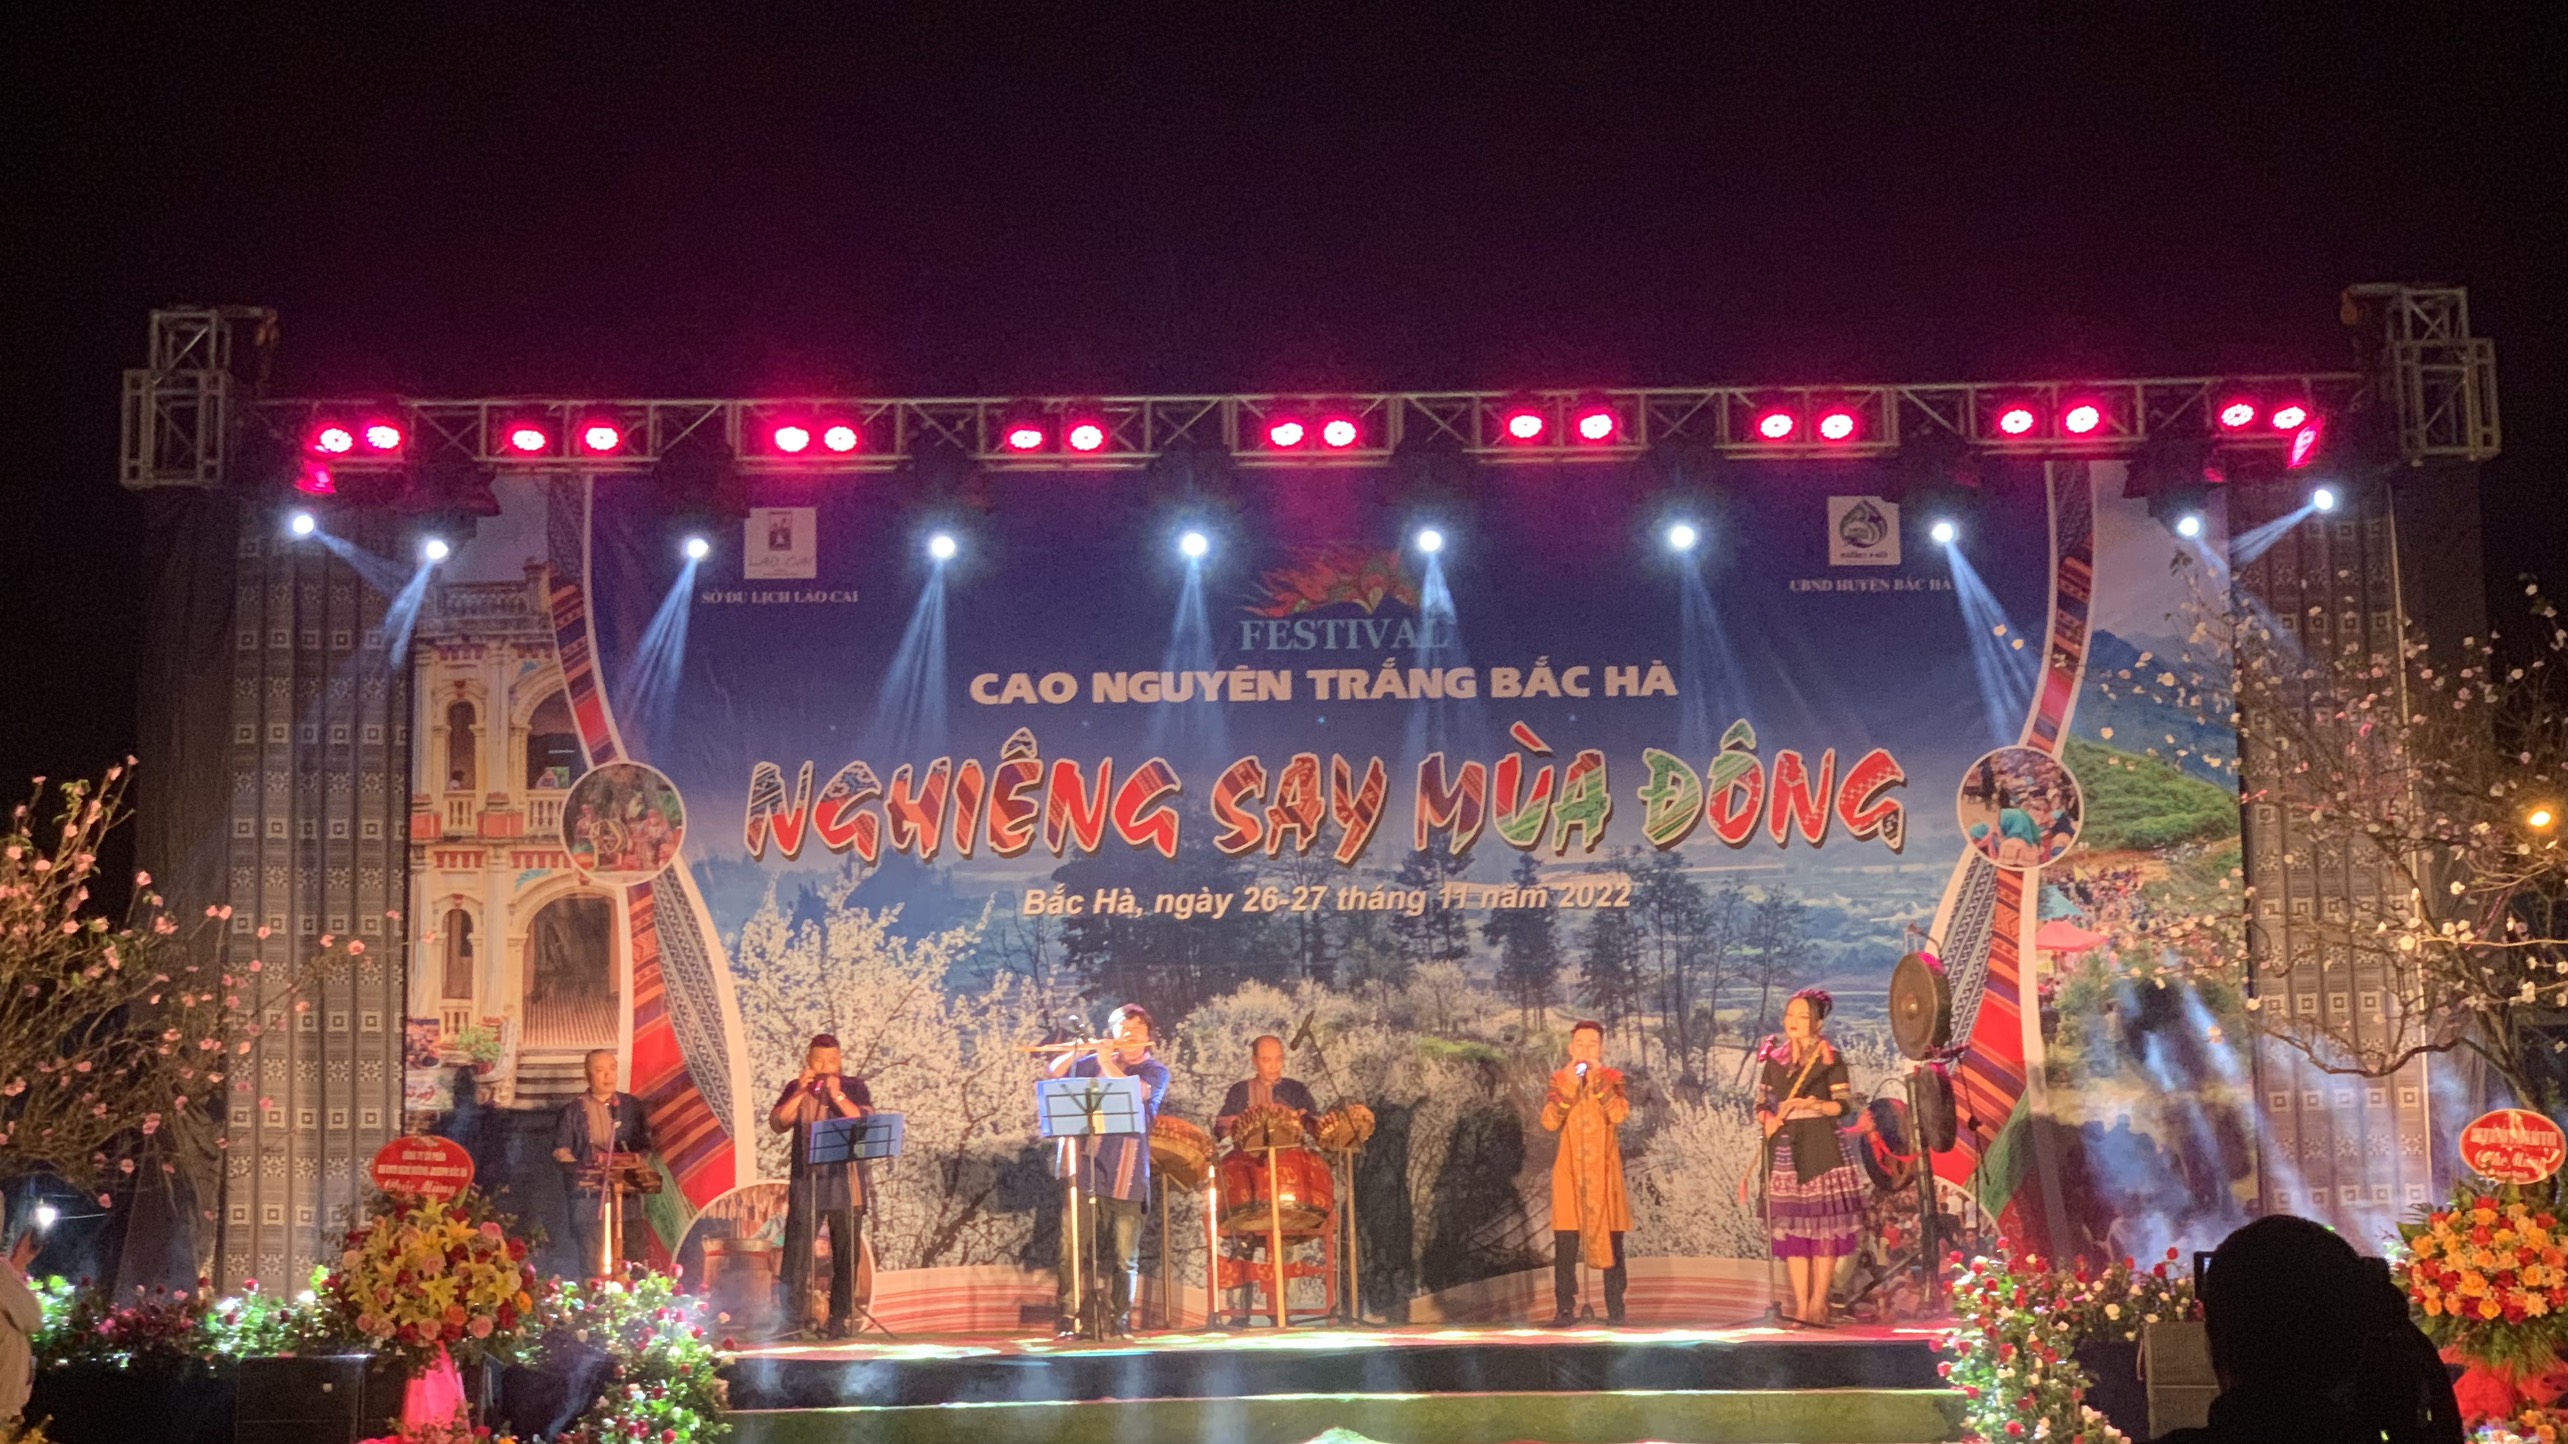 Khai mạc Festival Cao nguyên trắng Bắc Hà với  chủ đề “Nghiêng say mùa Đông”